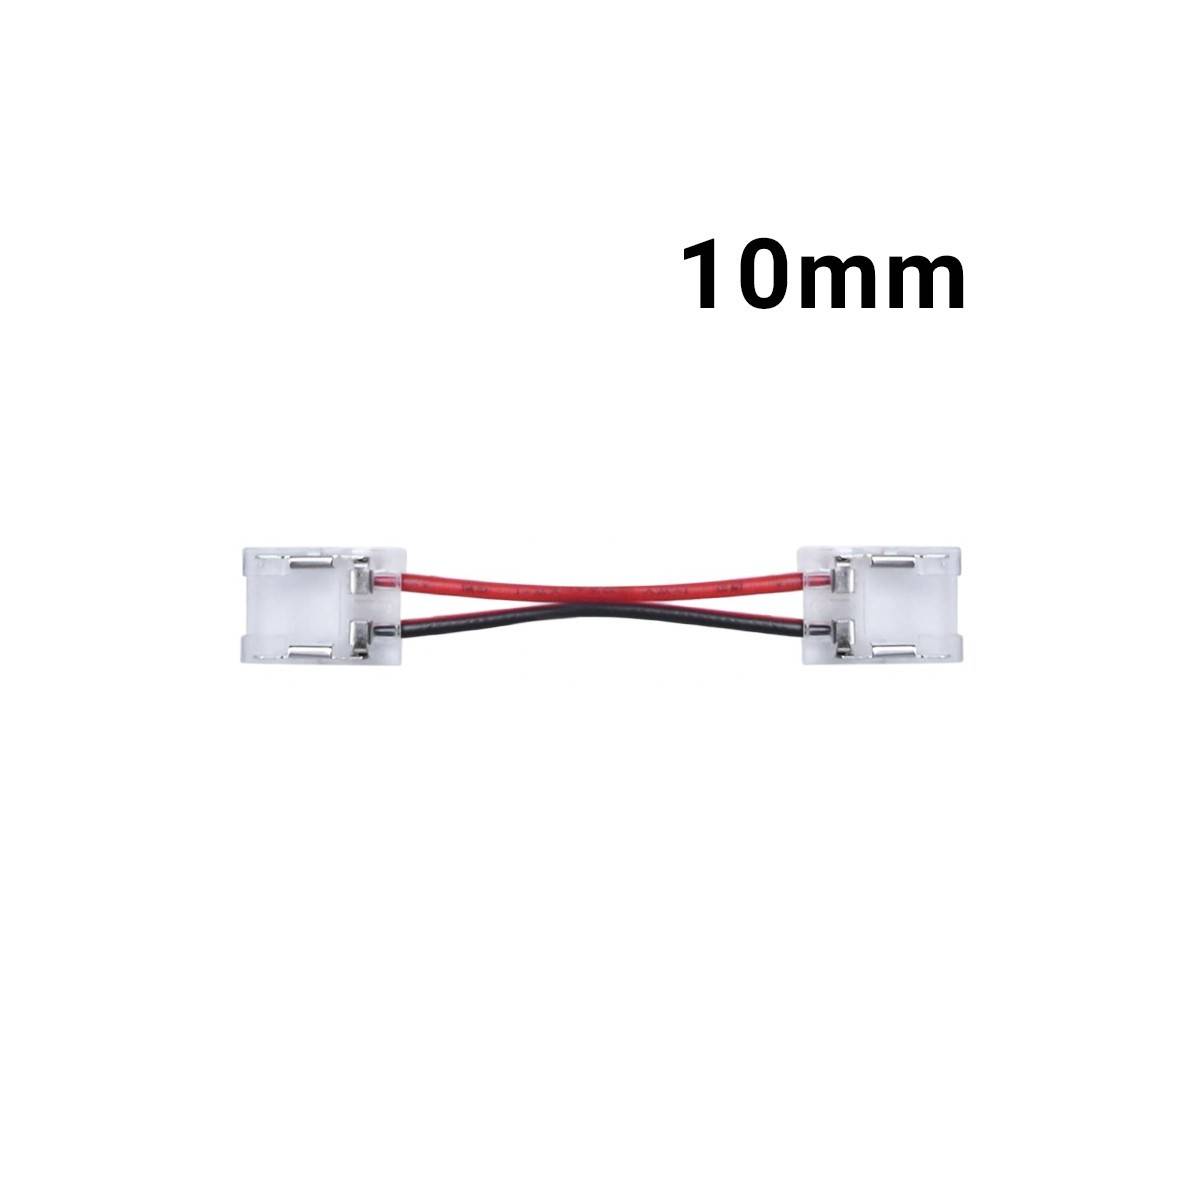 Conector rápido para FITA LED monocolor ou ponte PERFIL 10mm